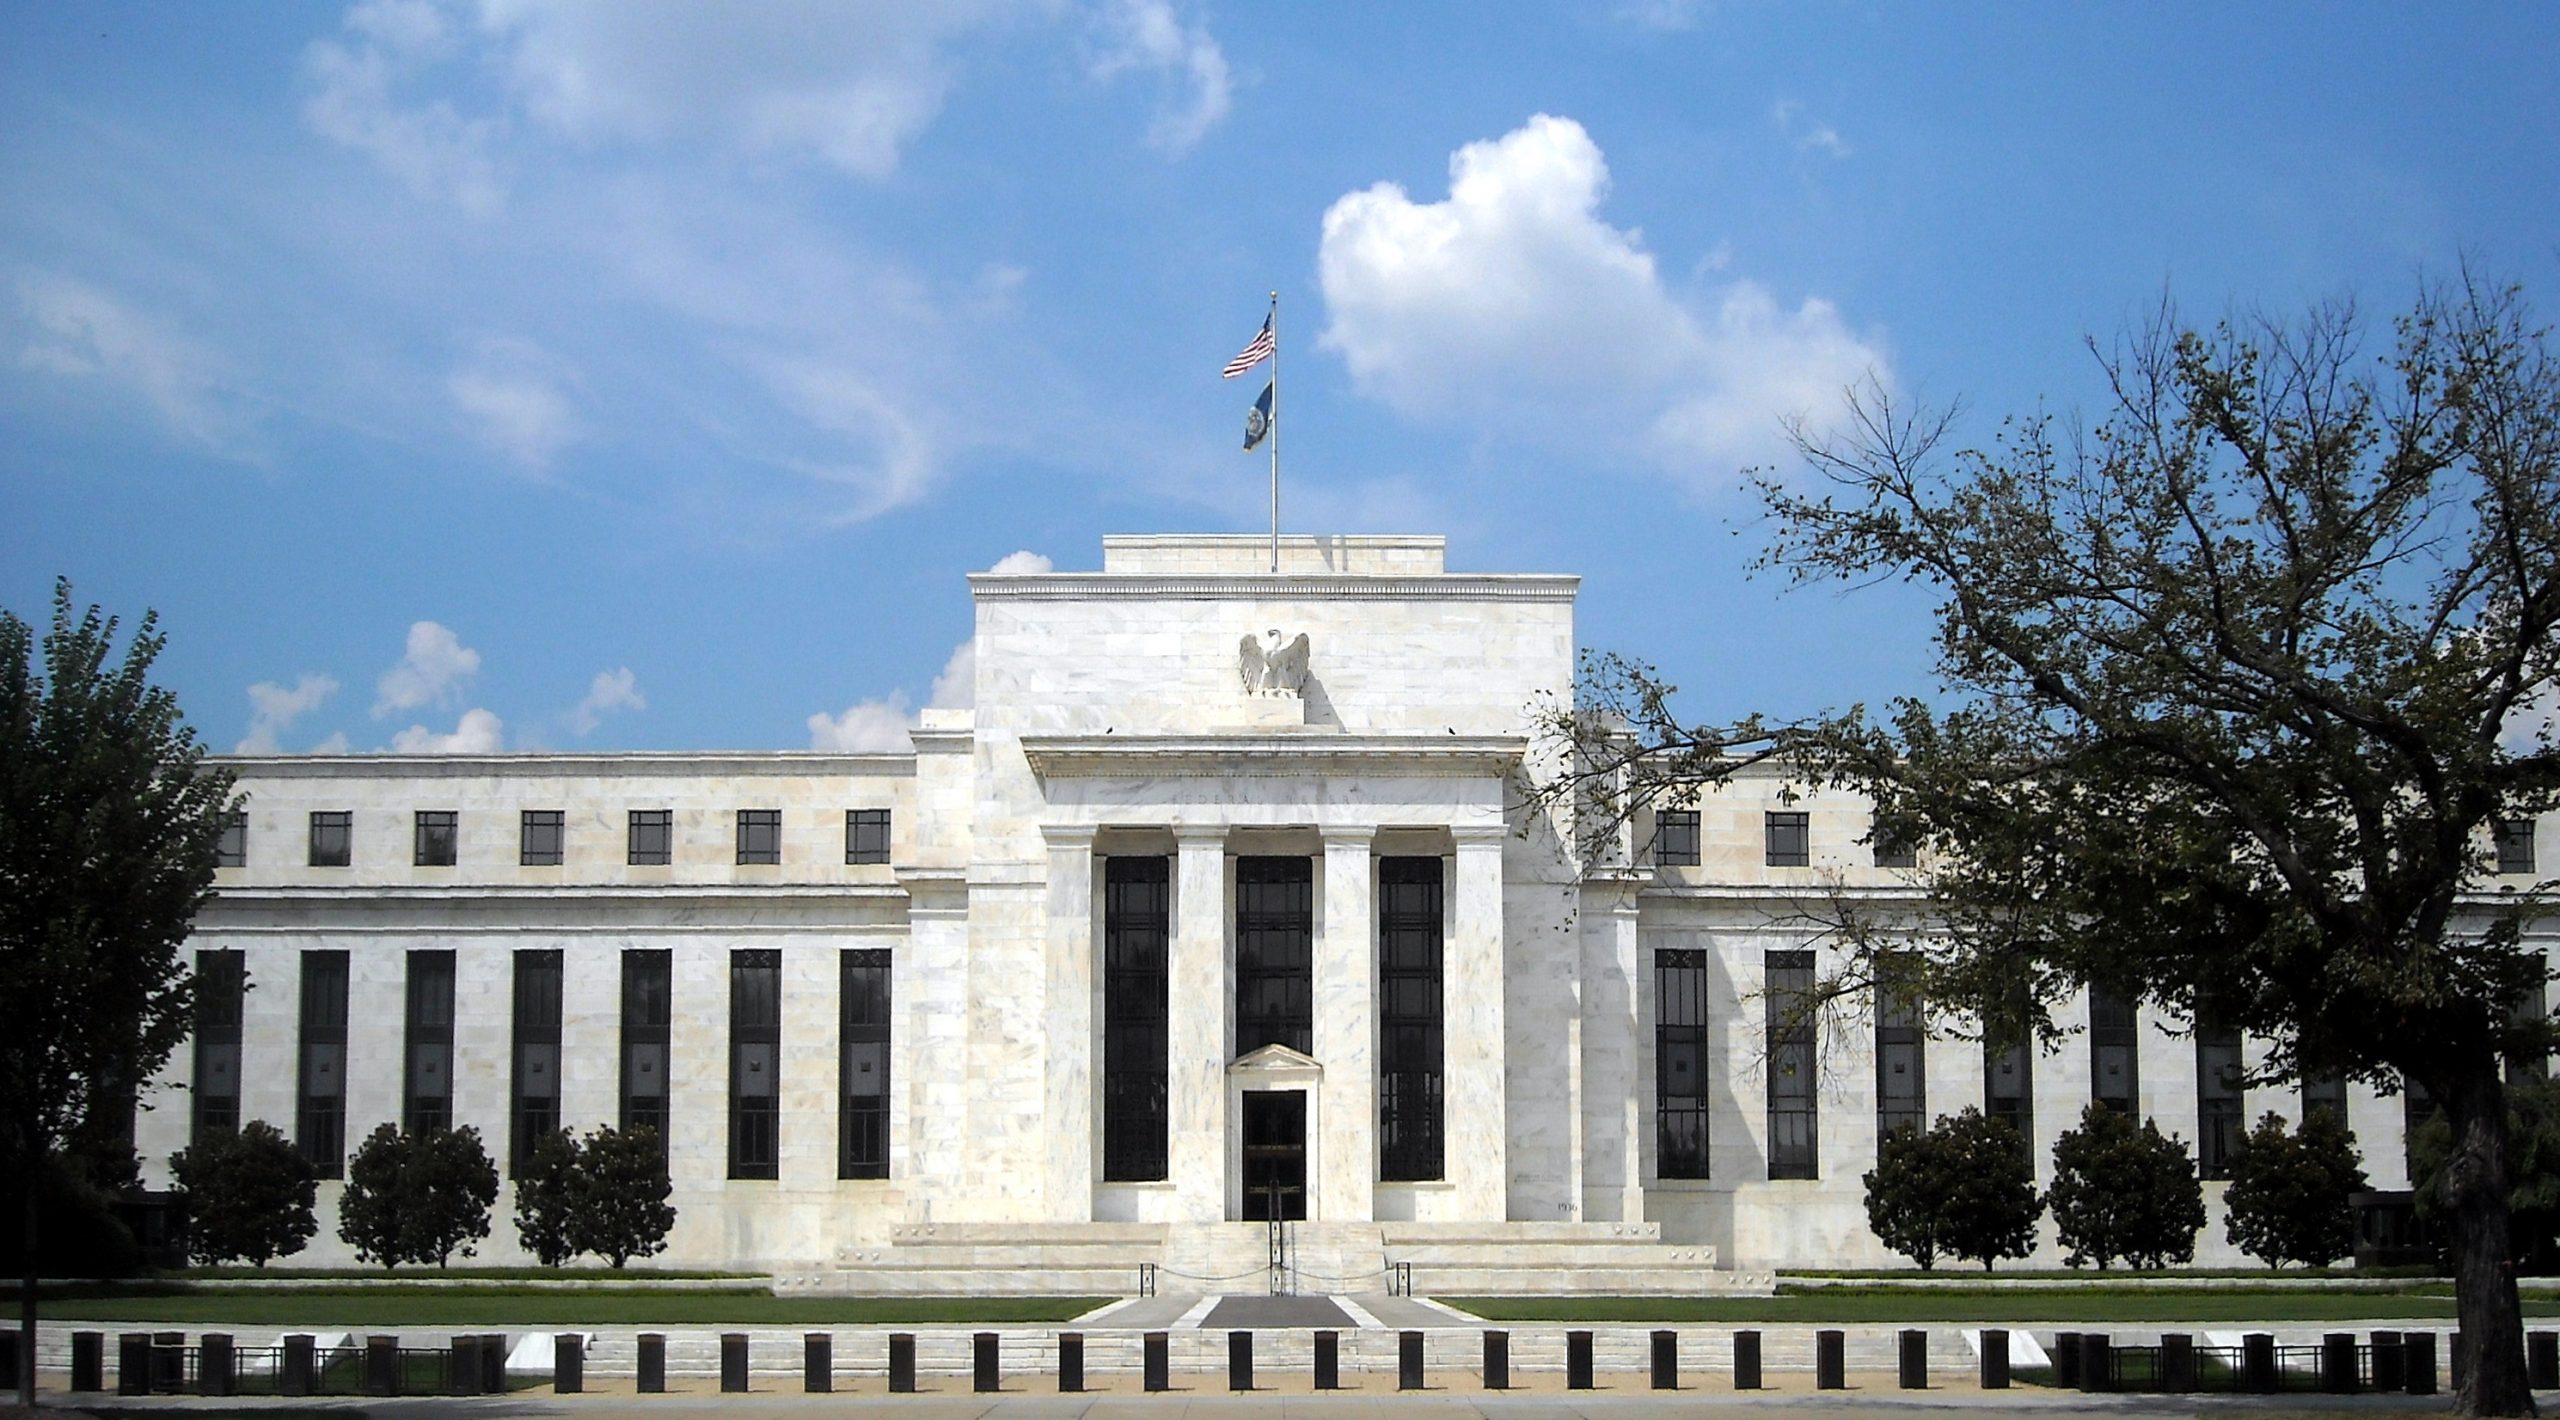 ΗΠΑ: Ανοικτή σε νέες αυξήσεις επιτοκίων η Fed – Ανησυχεί αλλά… ελπίζει για τον πληθωρισμό